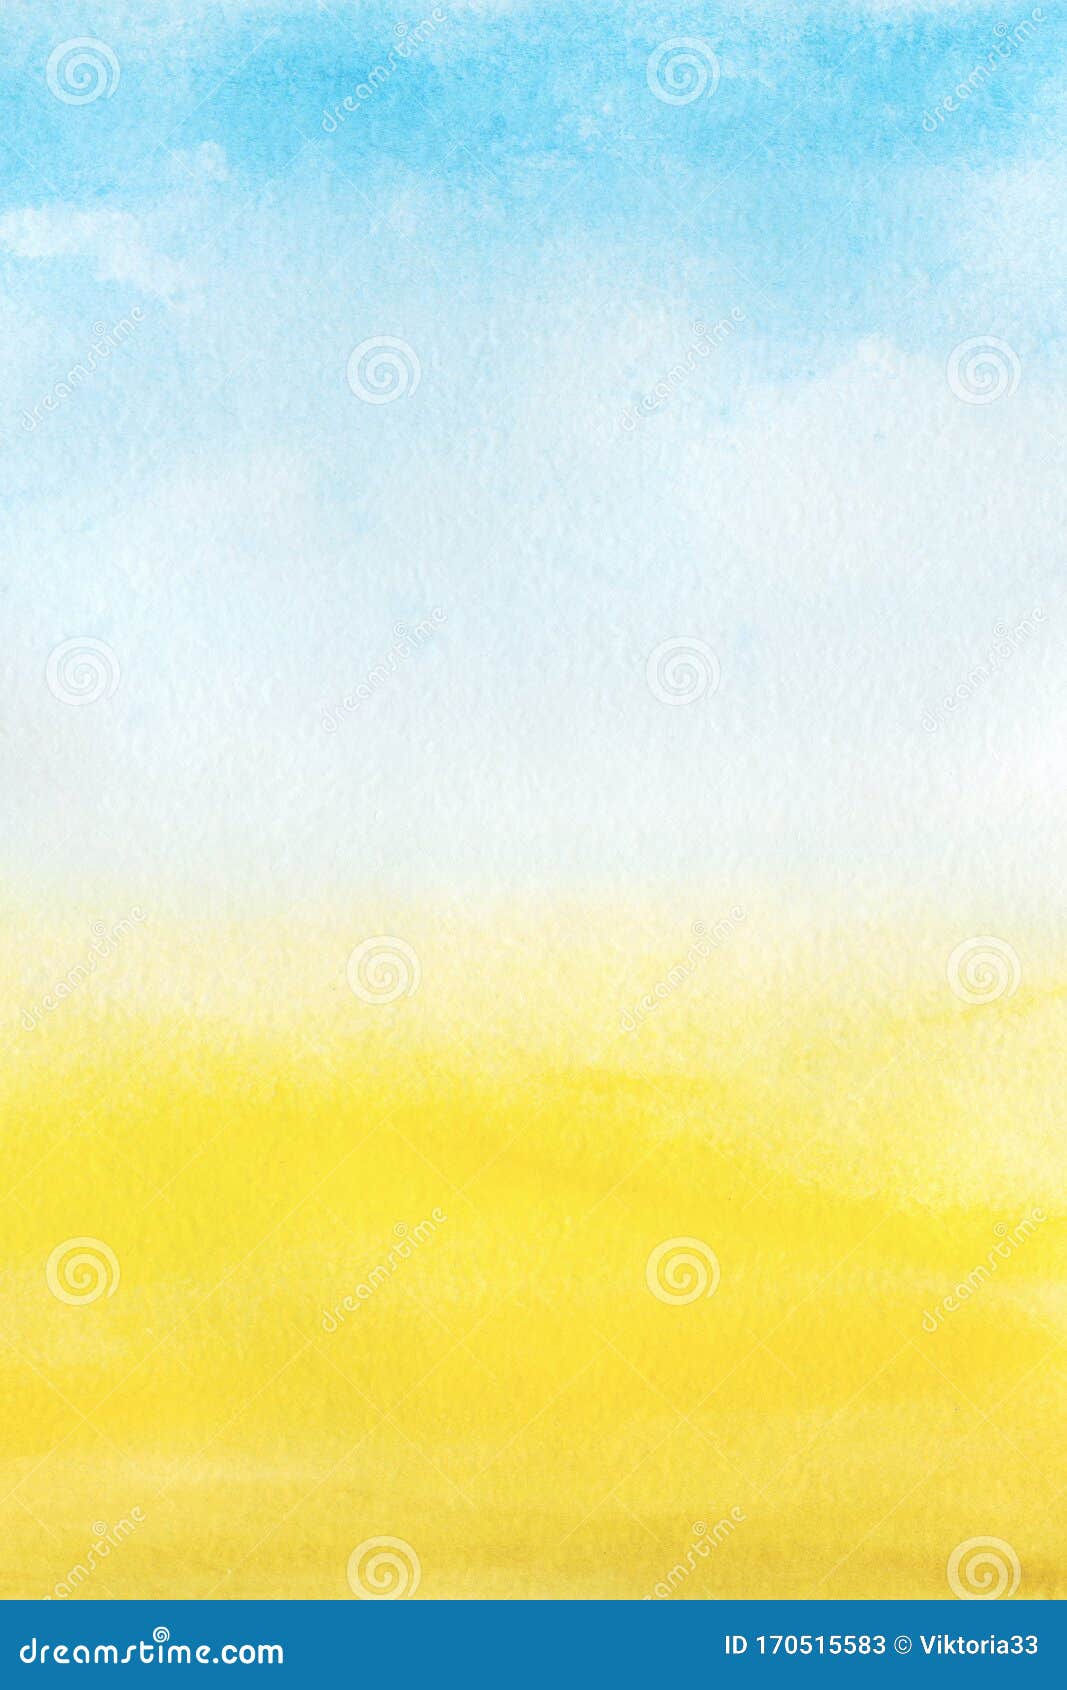 Với bộ sưu tập Blue Yellow Sky Stock Photos đầy màu sắc, bạn sẽ có cơ hội trải nghiệm những khoảnh khắc đầy màu sắc và độc đáo trong không gian và trời. Đừng bỏ lỡ cơ hội để sử dụng những hình ảnh đẹp này tăng tính chuyên nghiệp cho bức ảnh của bạn.